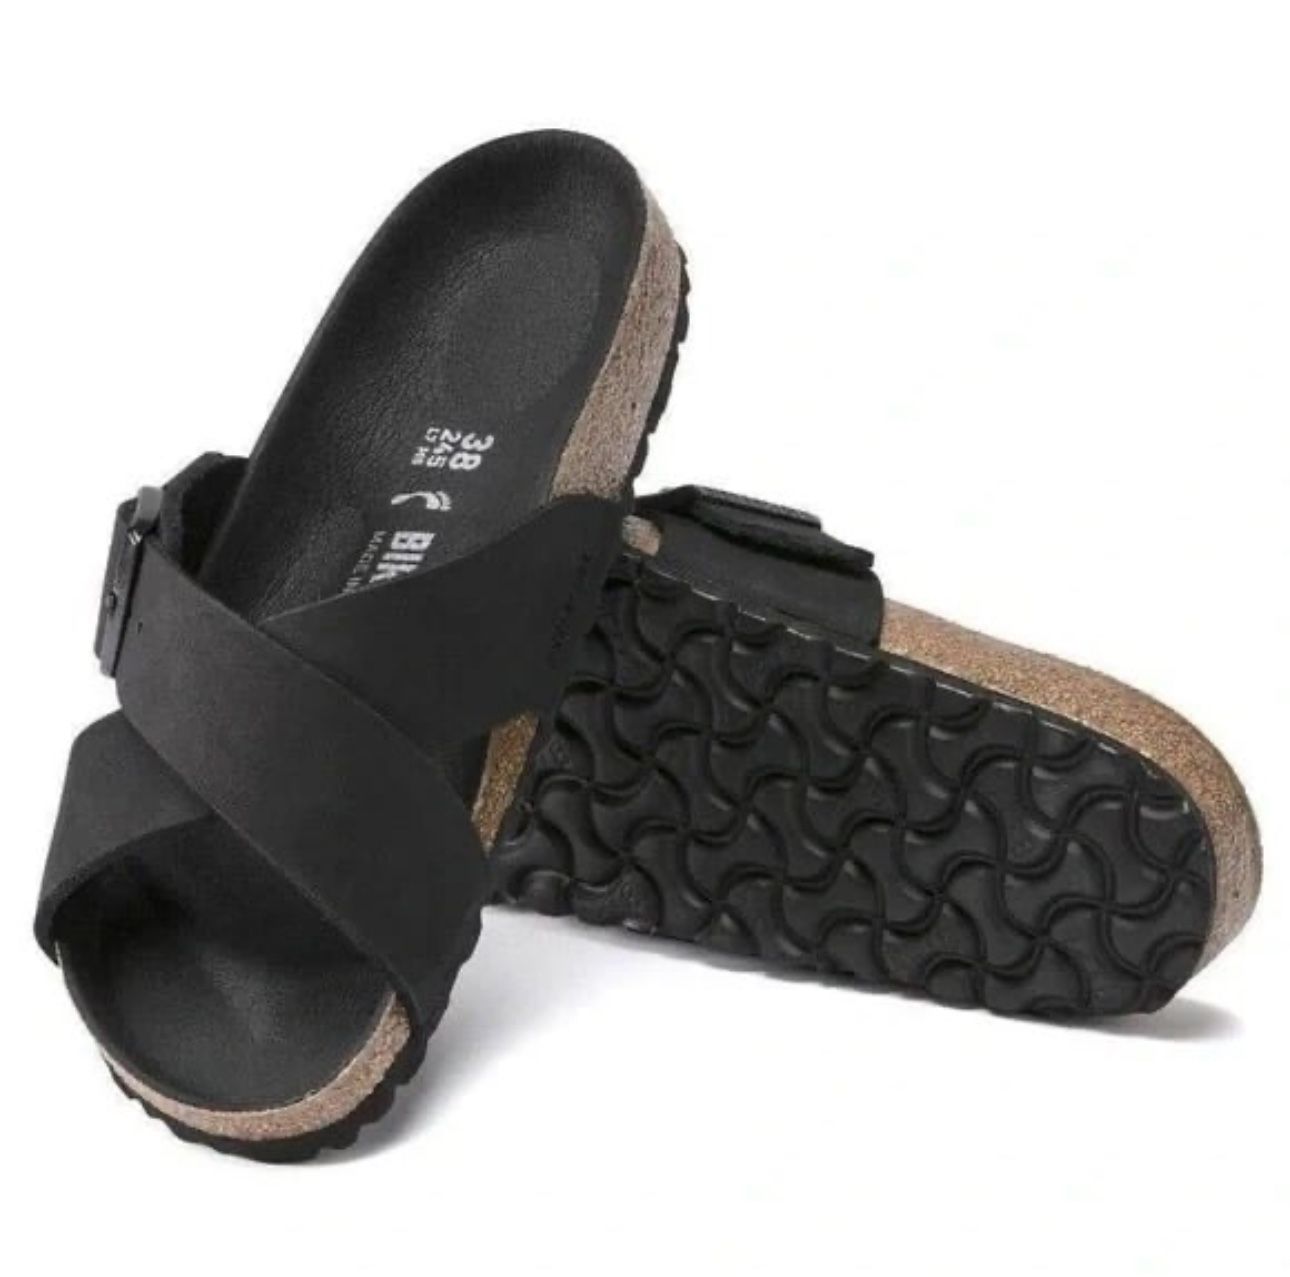 7W - [NEW] Birkenstock Women's Siena Big Buckle Oiled Leather Sandal